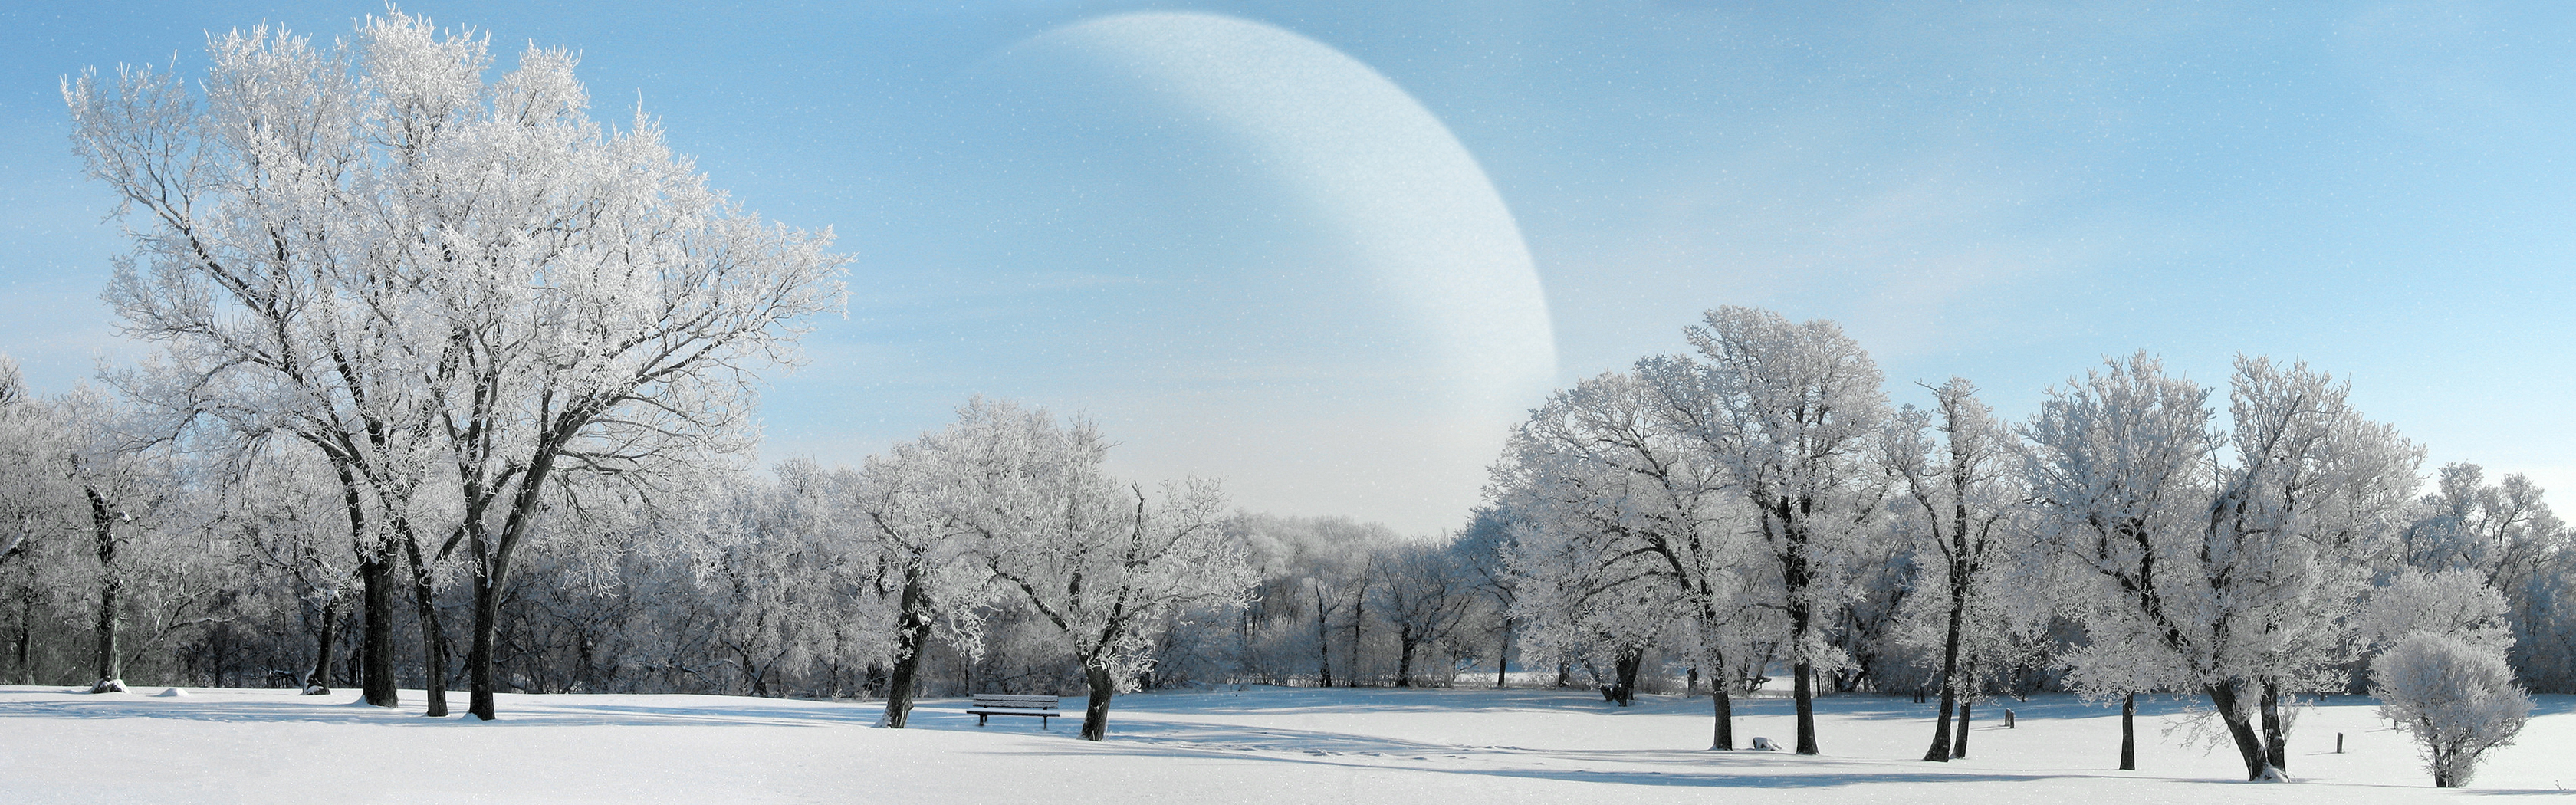 Landscape Planet Snow Winter 3360x1050